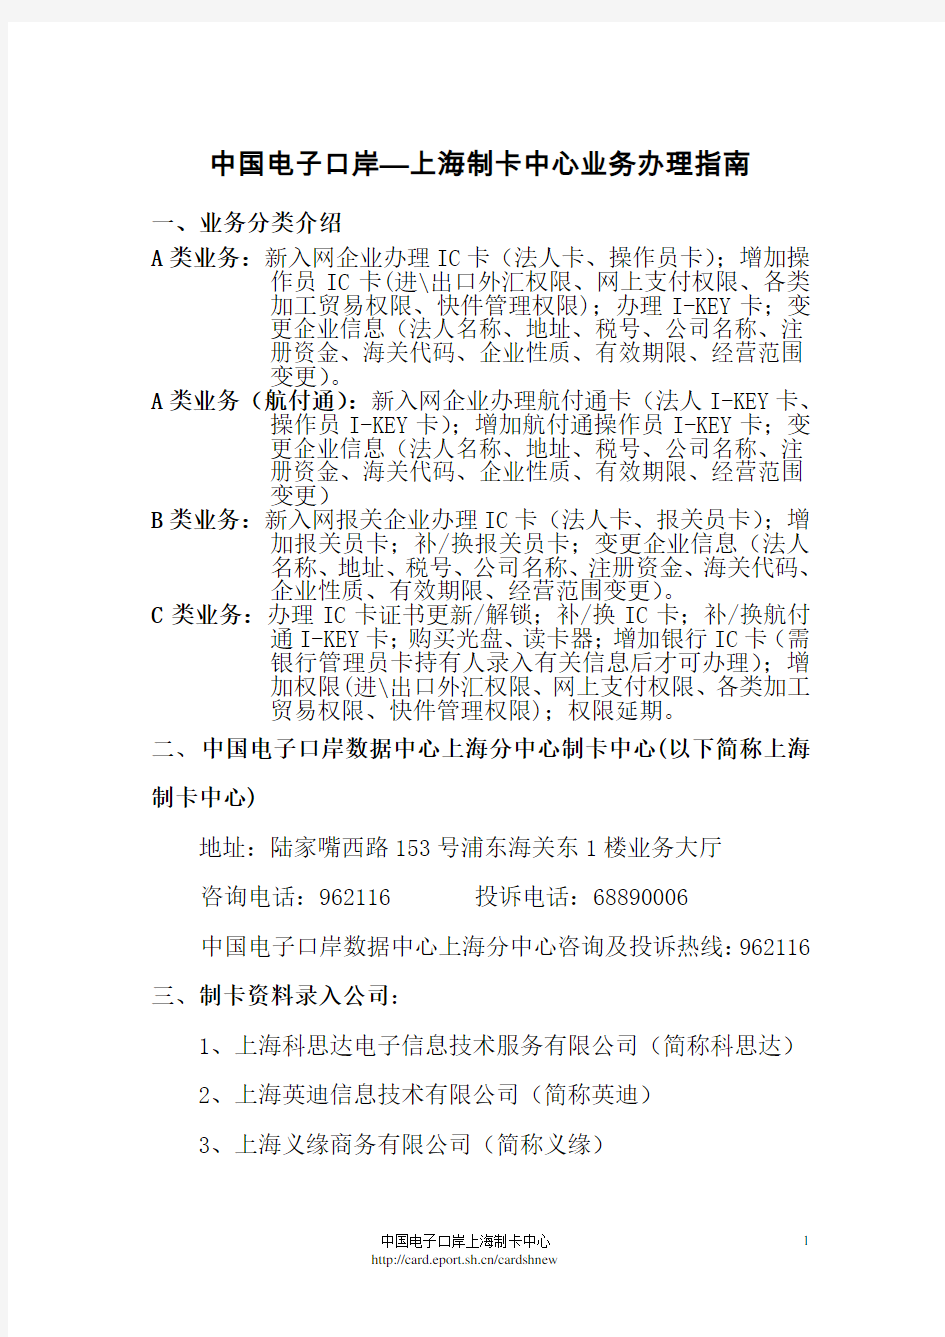 上海制卡中心业务办理指南